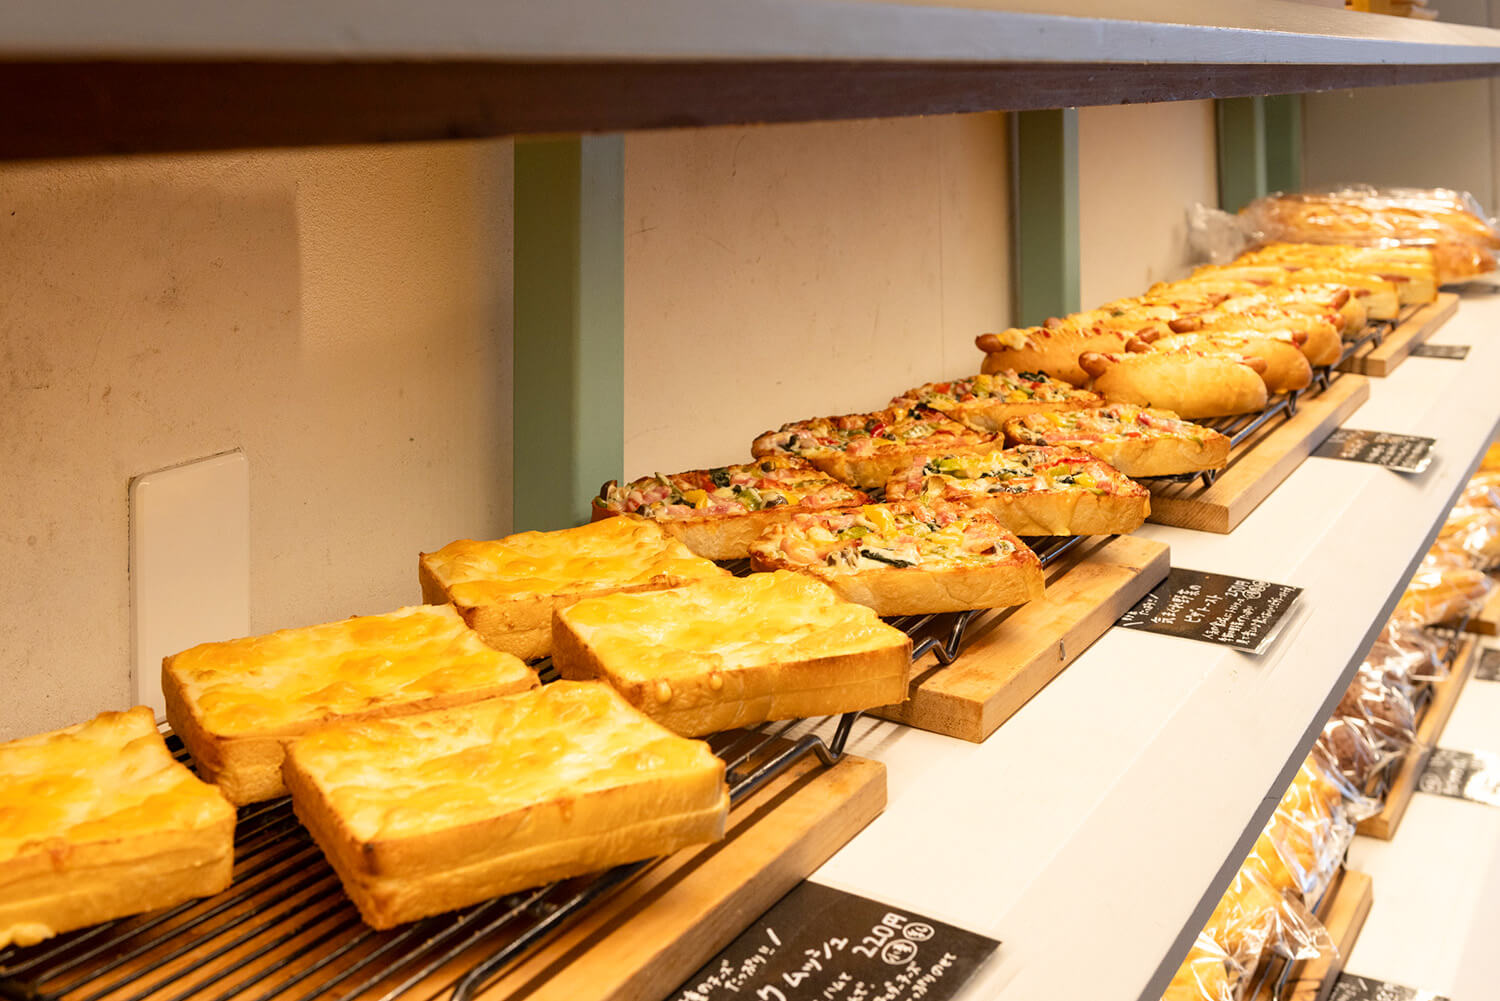 「ピザトースト」250円や「クロックムッシュ」220円など食べ応えのある調理パンも人気